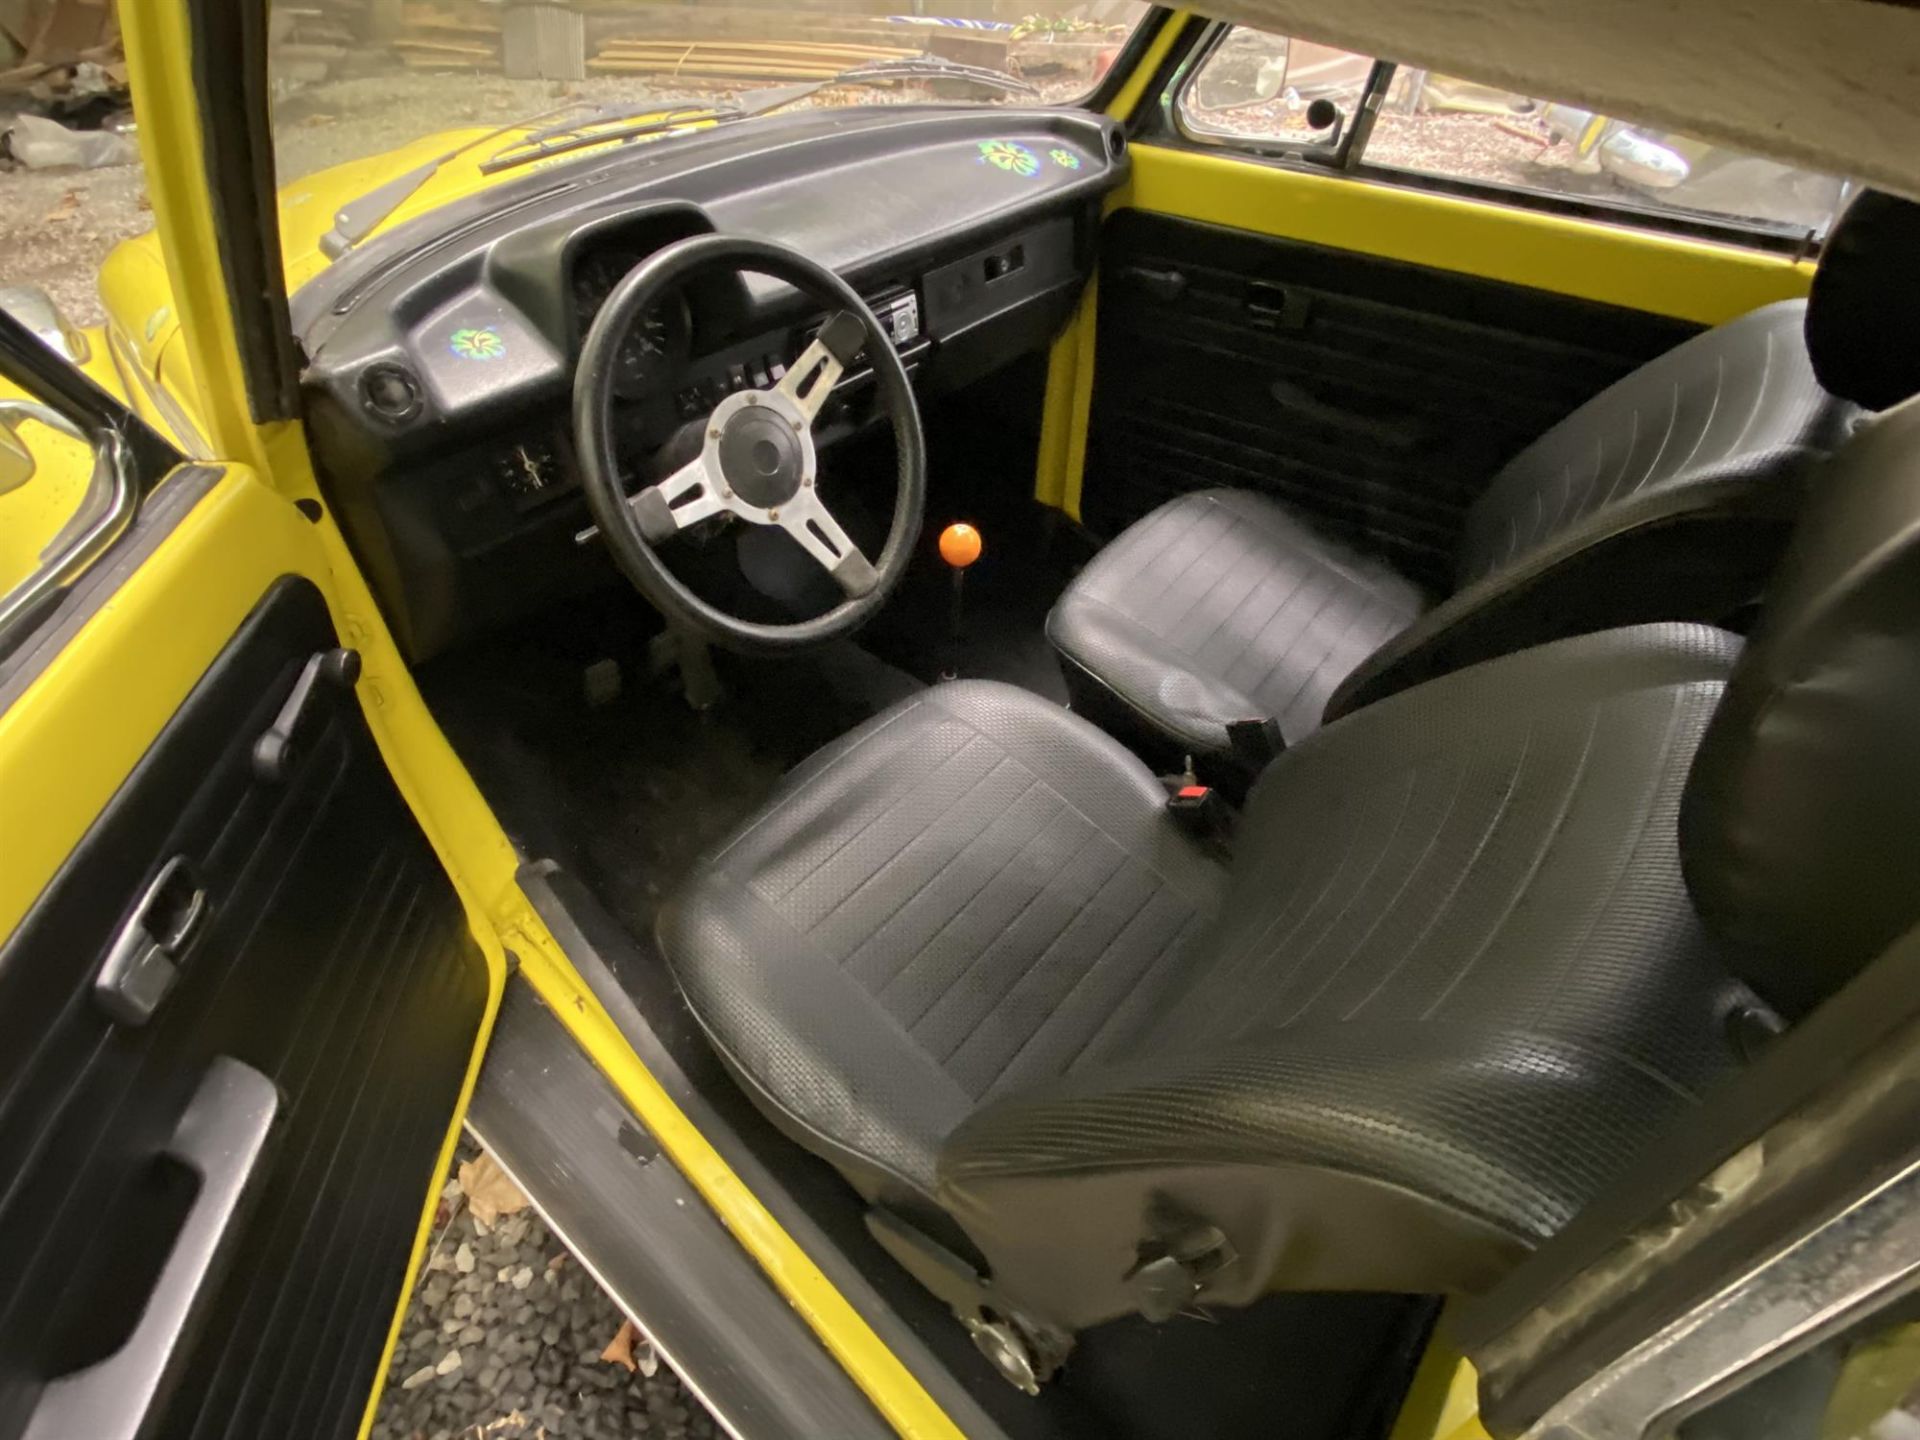 1977 Volkswagen Beetle Convertible - Image 3 of 6